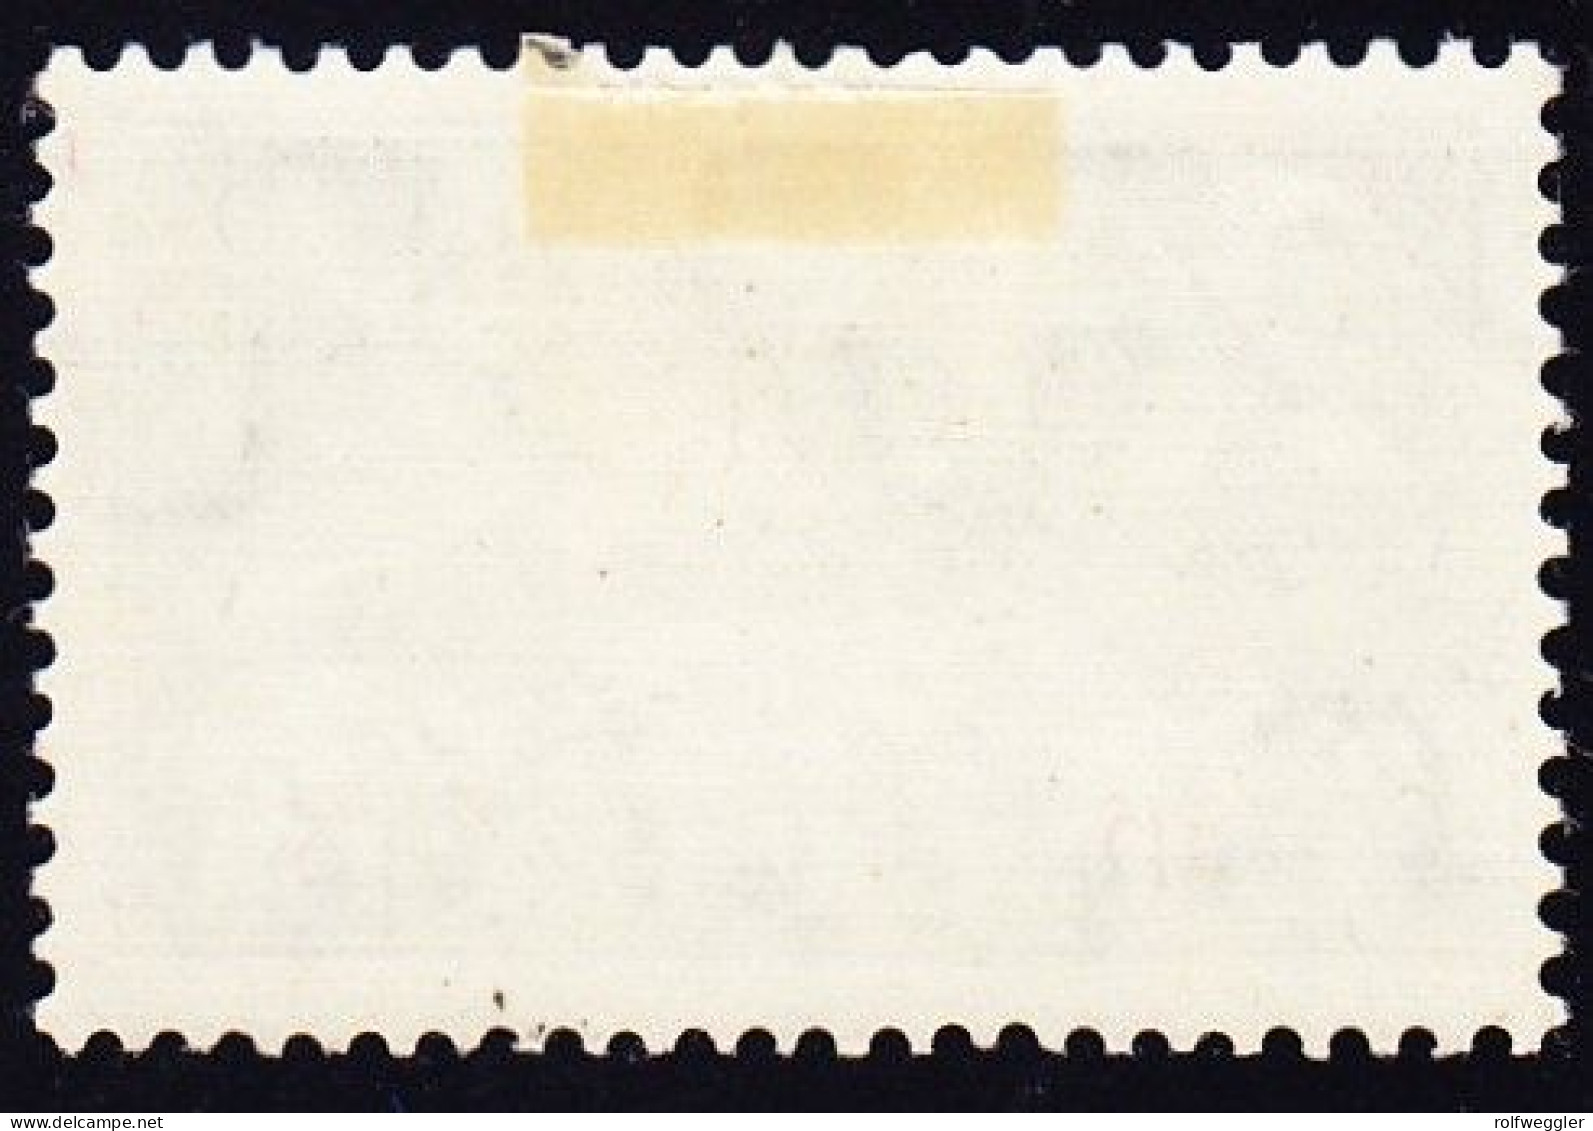 1937 20 Rp Grün, Geriffeltes Papier, Originalgummi Erstfalz (nach Links Stark Verschobener Unterdruck) - Unused Stamps